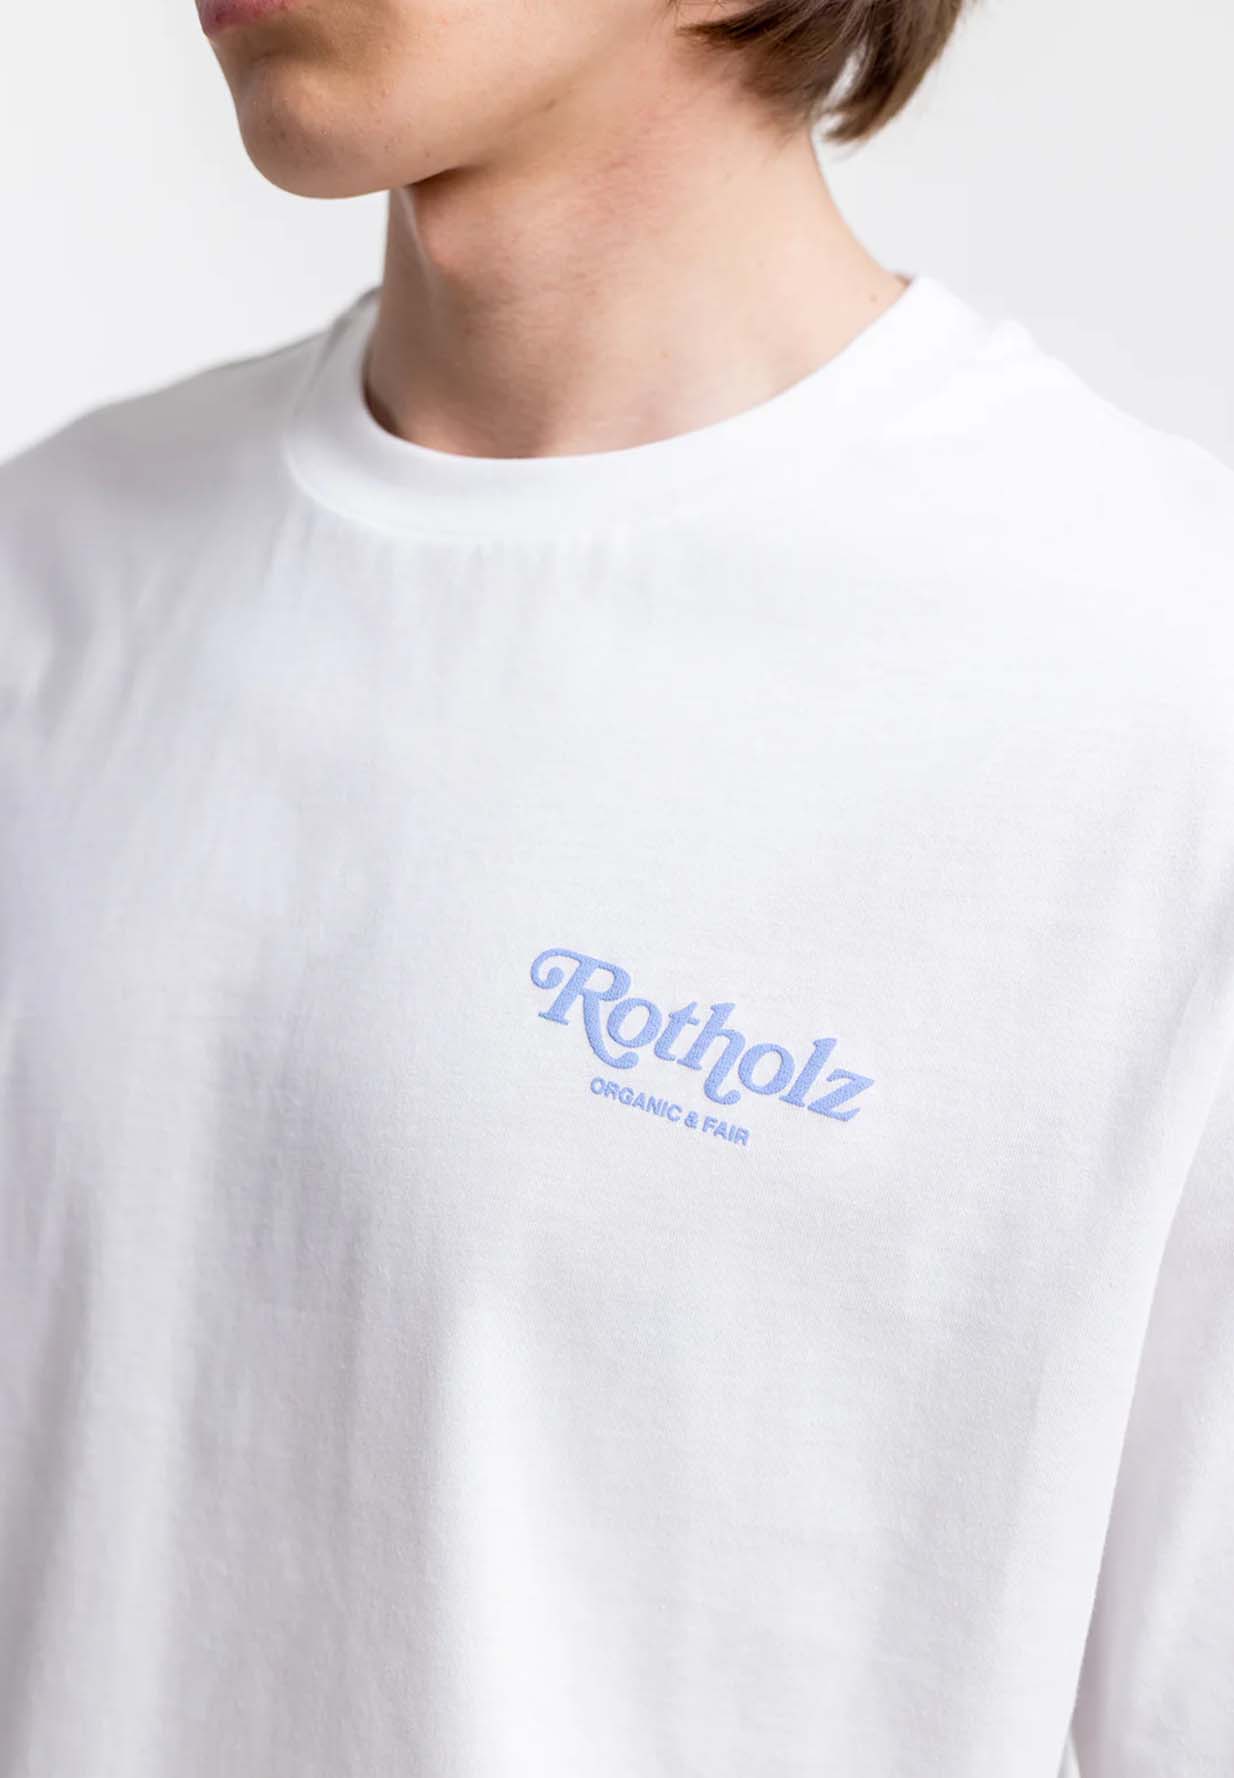 ROTHOLZ Retro Logo T-Shirt white M